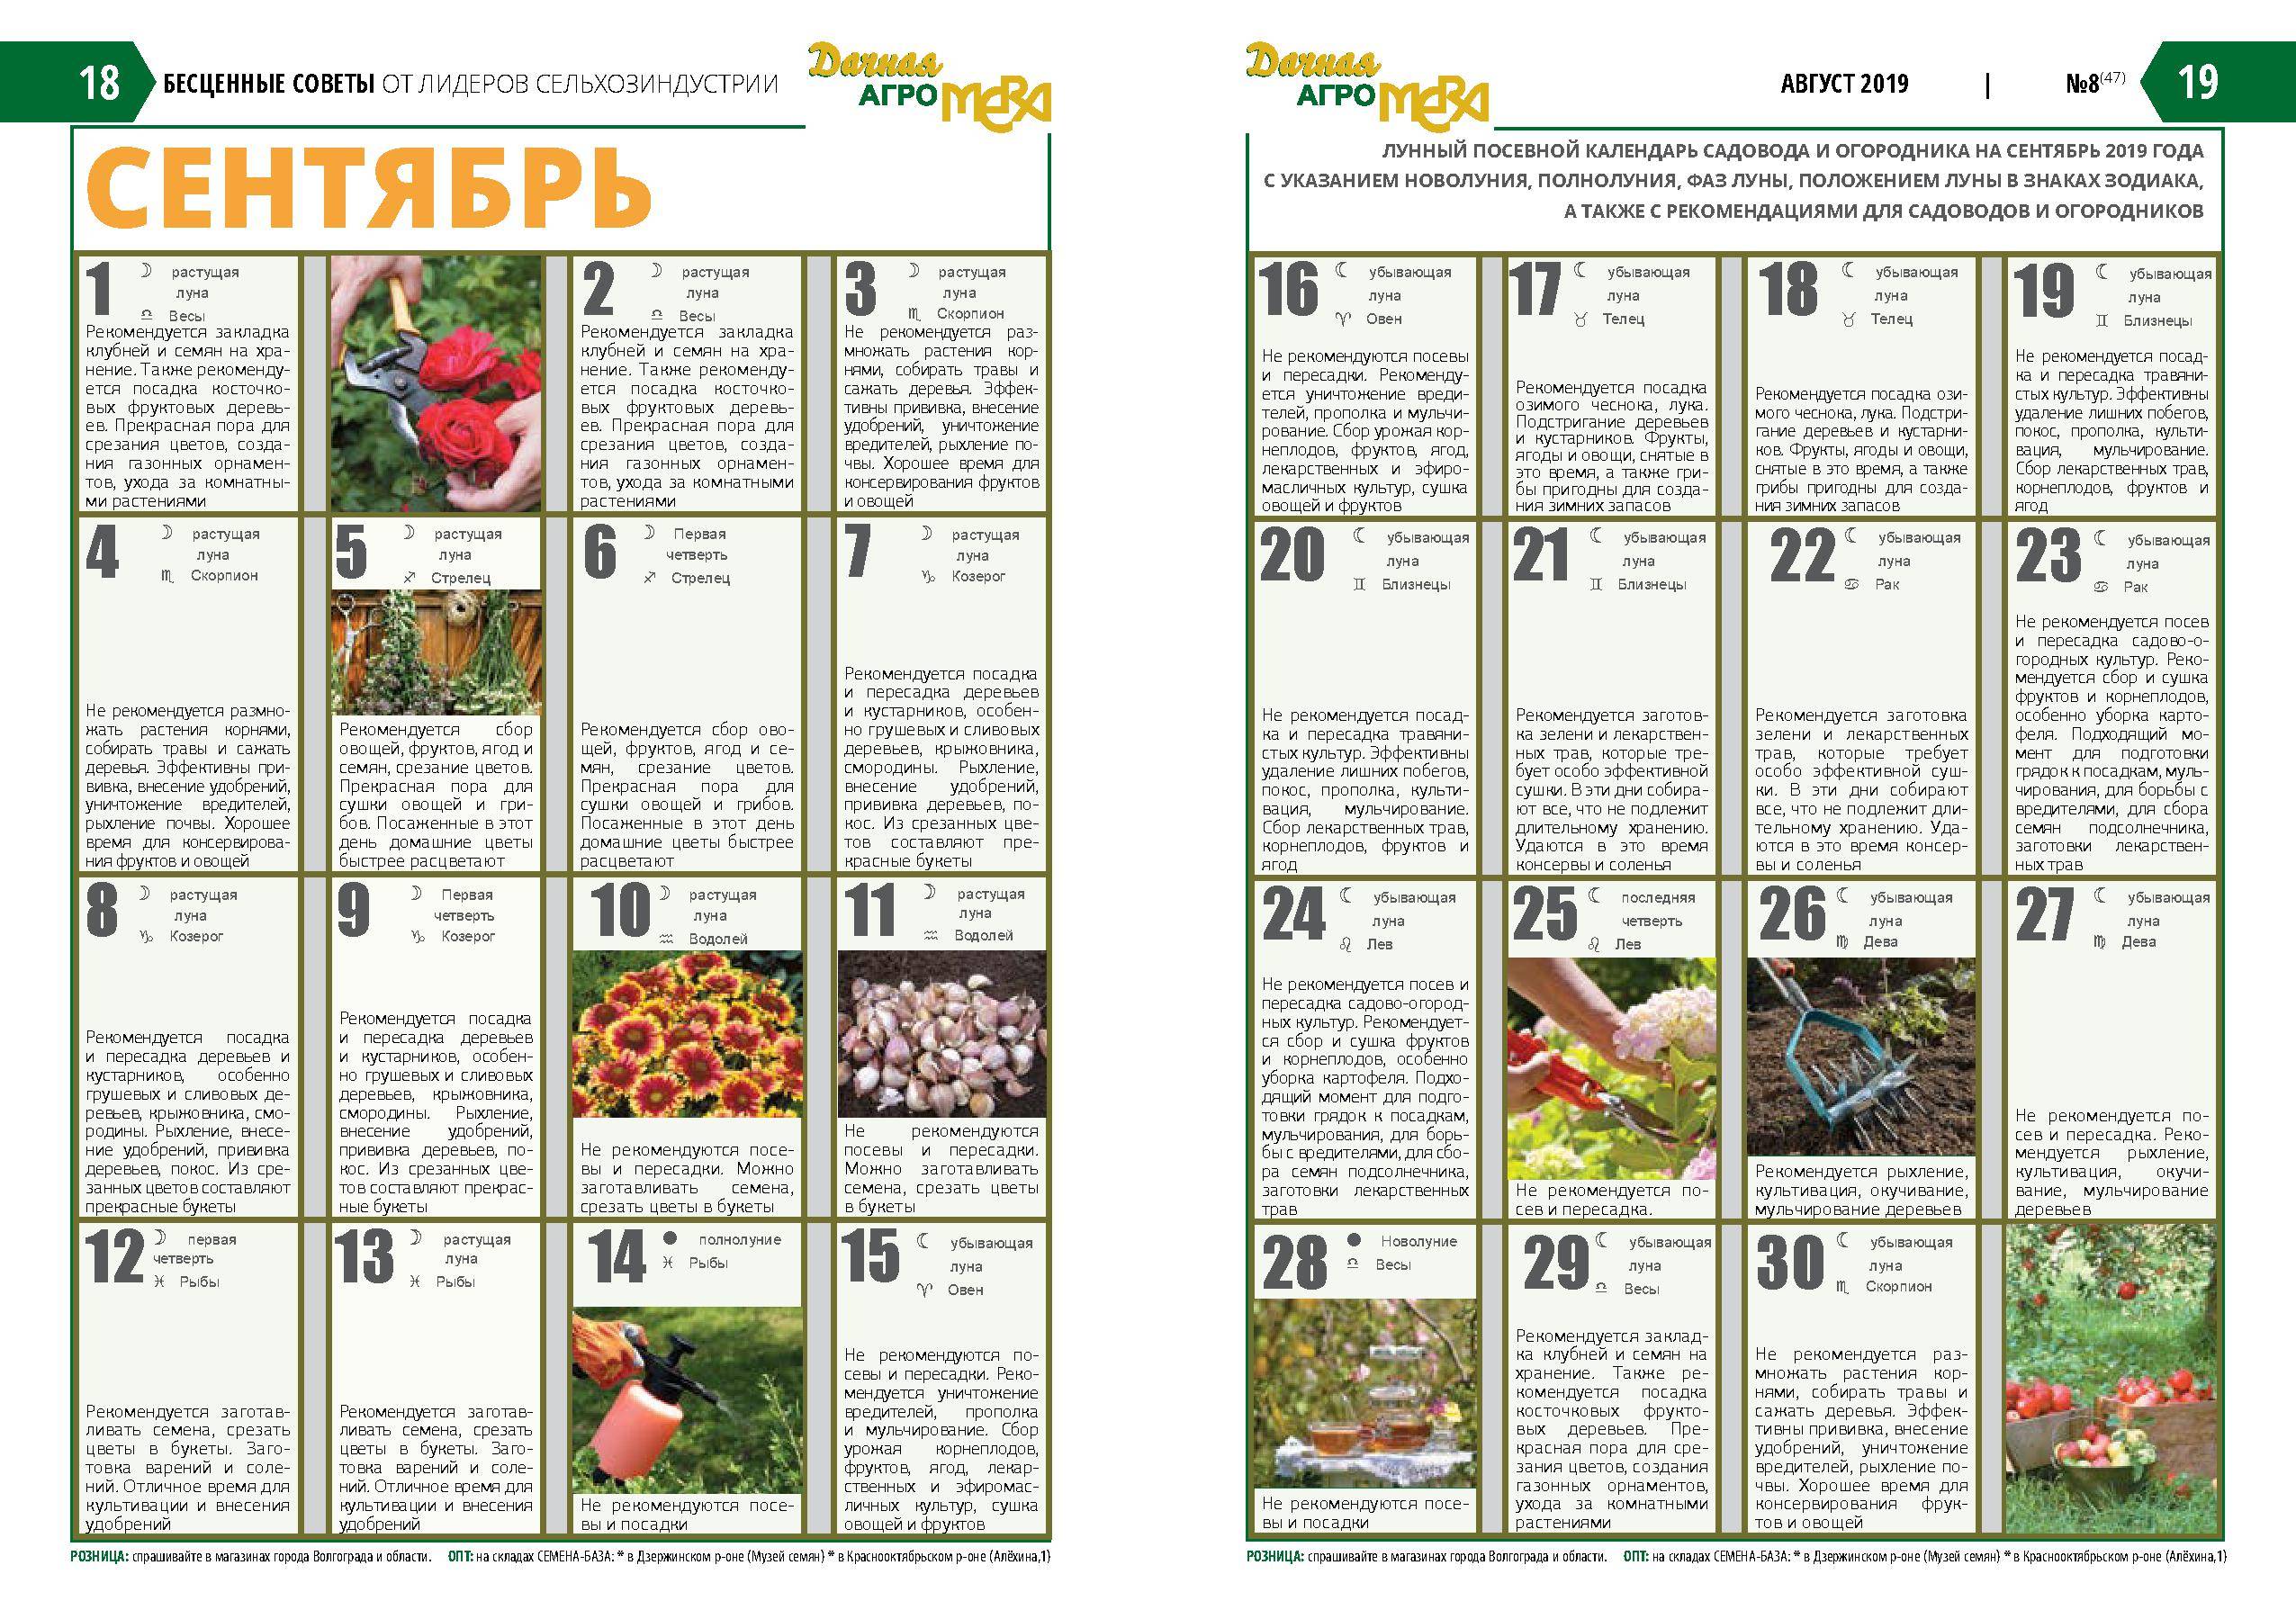 Лунный посевной календарь садоводов и огородников на 2019 год